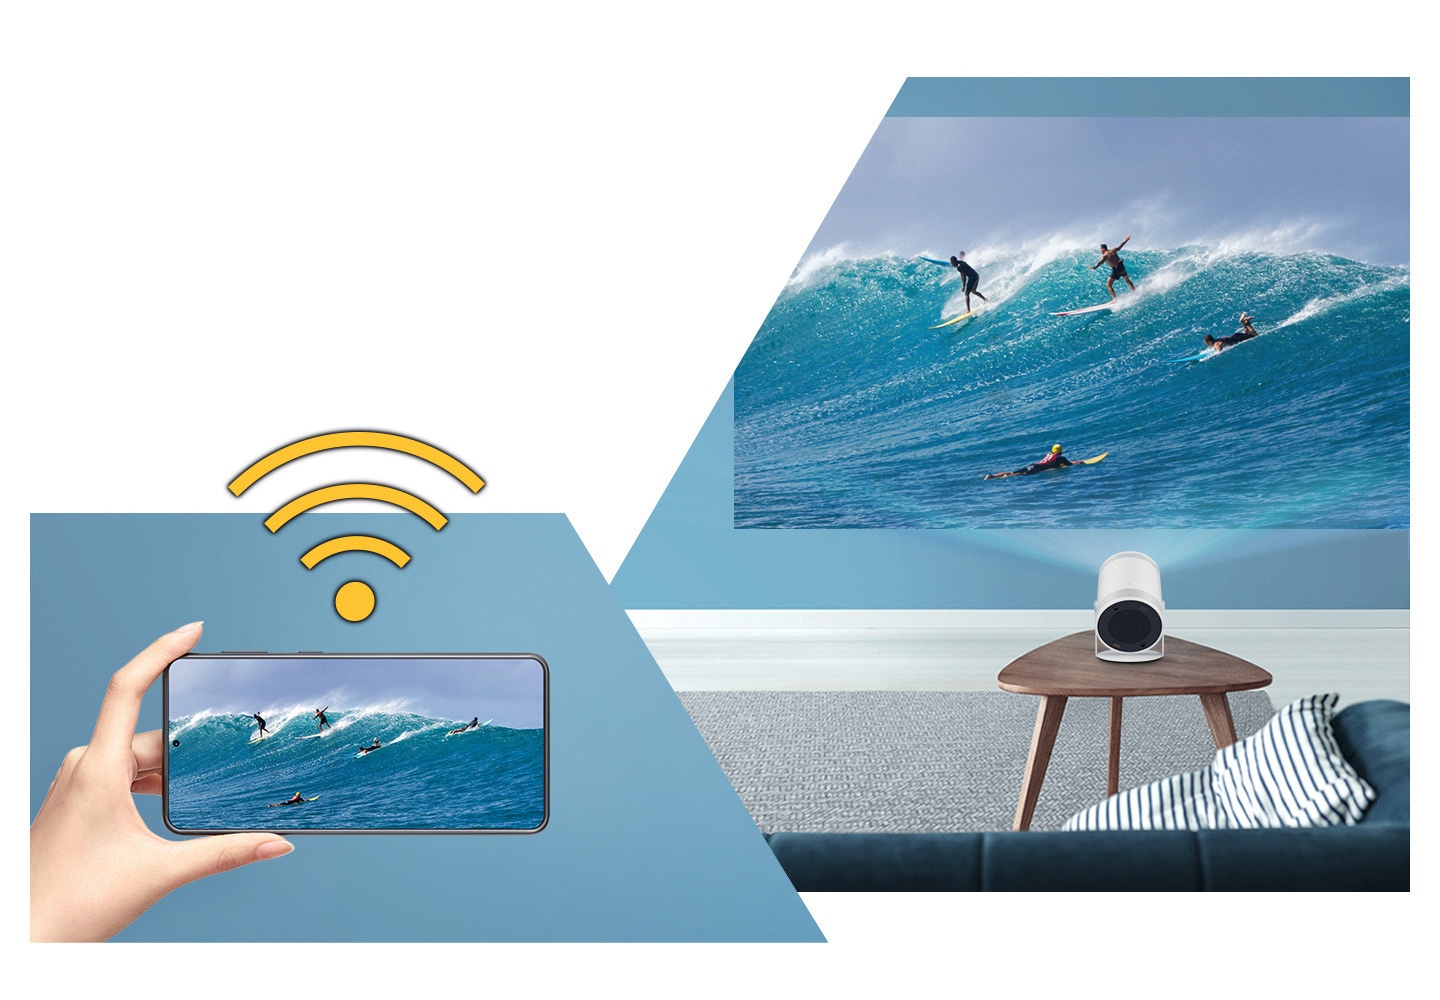 Ký hiệu Wi-Fi trên tay đang cầm thiết bị di động. Hình ảnh lướt web trên thiết bị di động được phản chiếu trên màn hình lớn của The Freestyle.